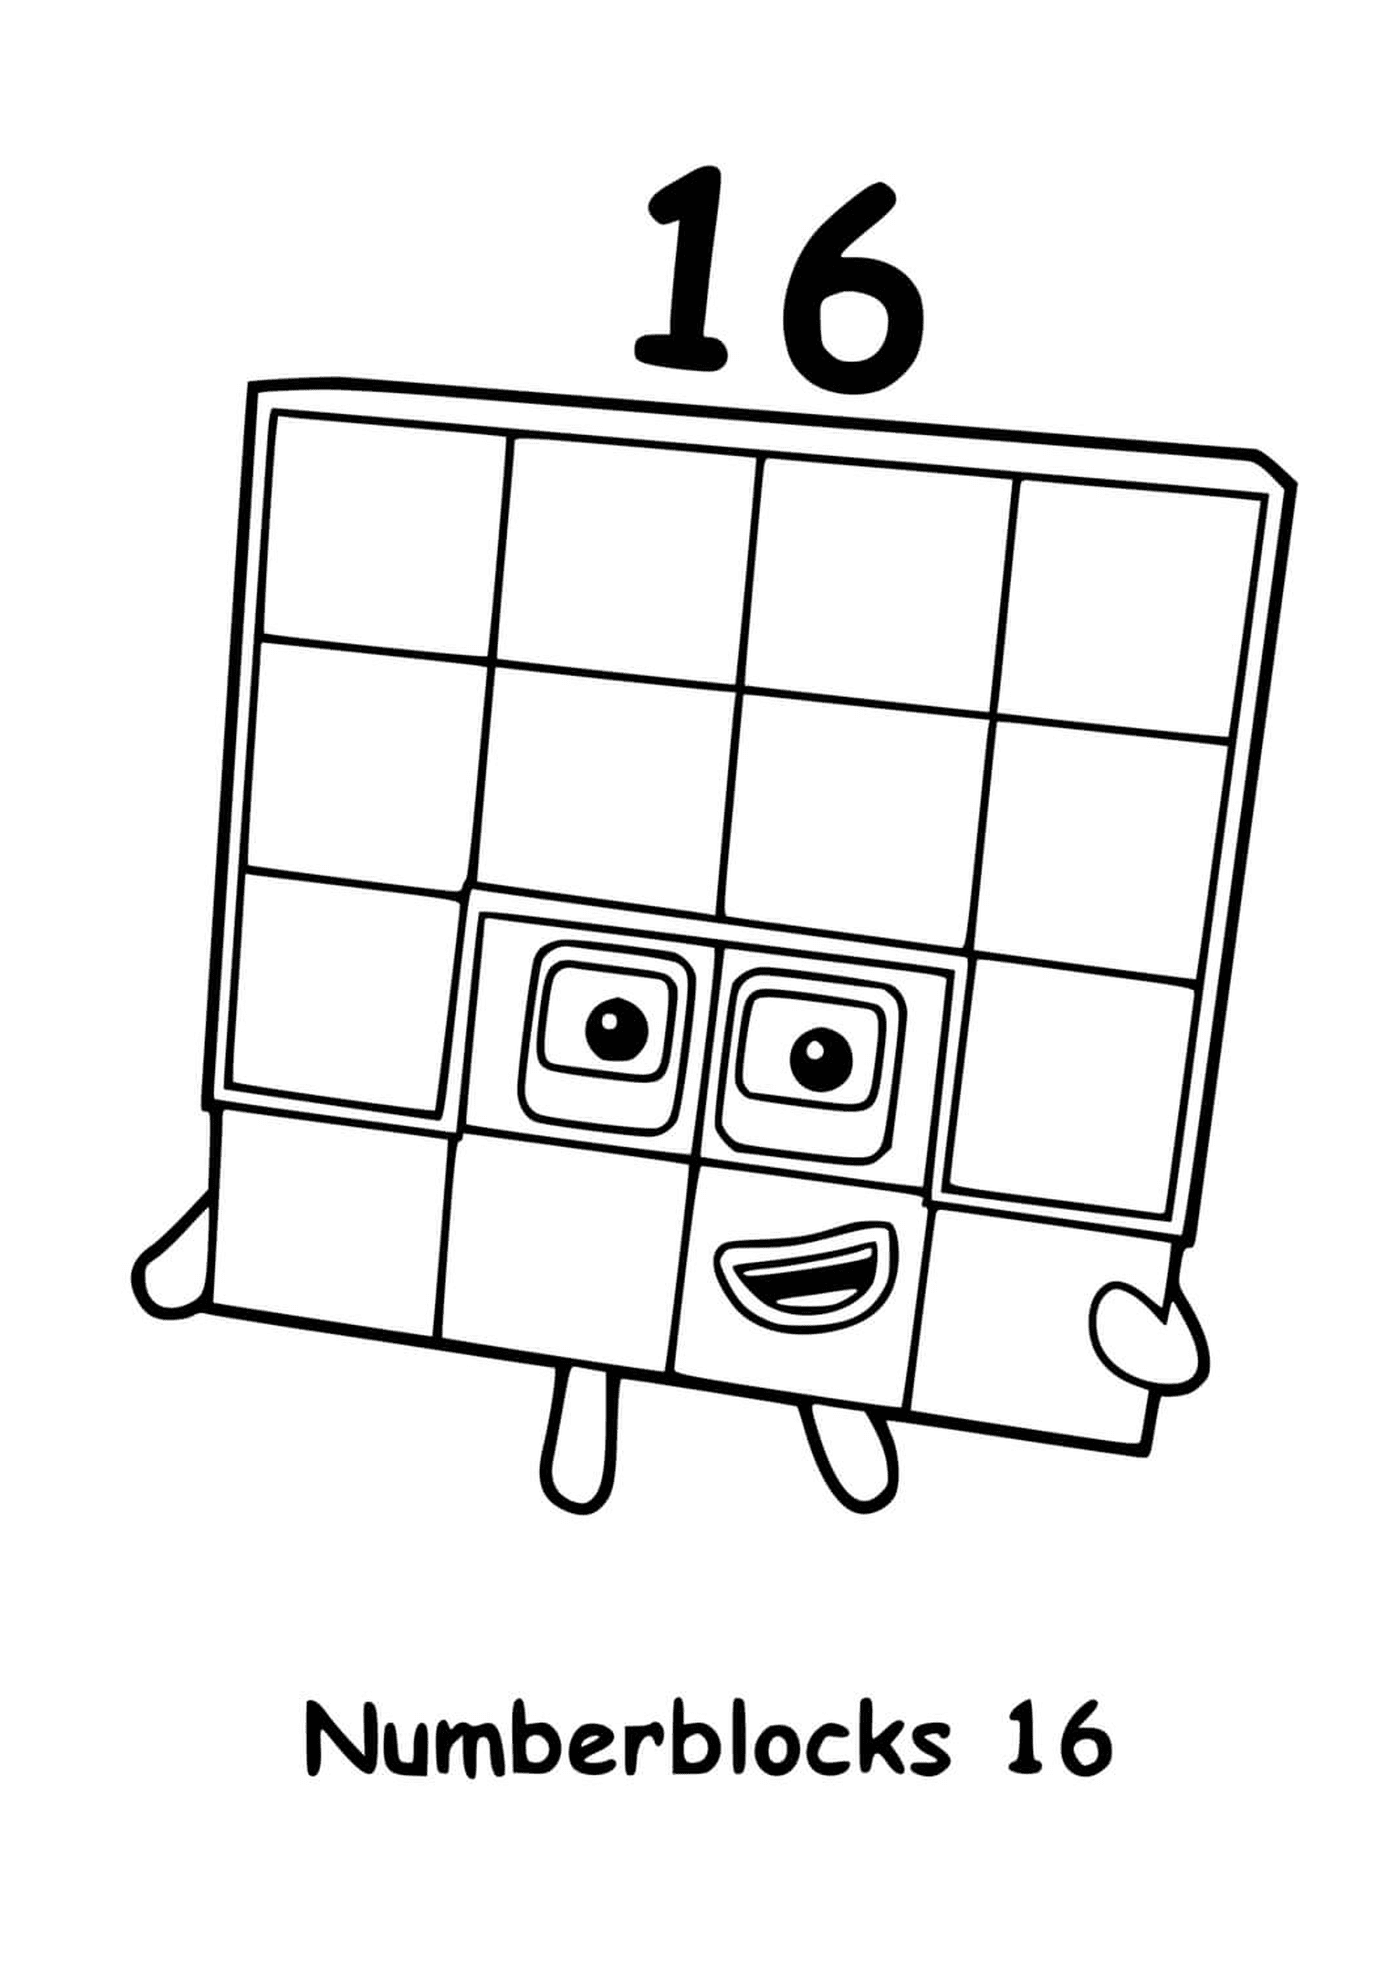  Numberblocks número 16, ao quadrado com quadrados 